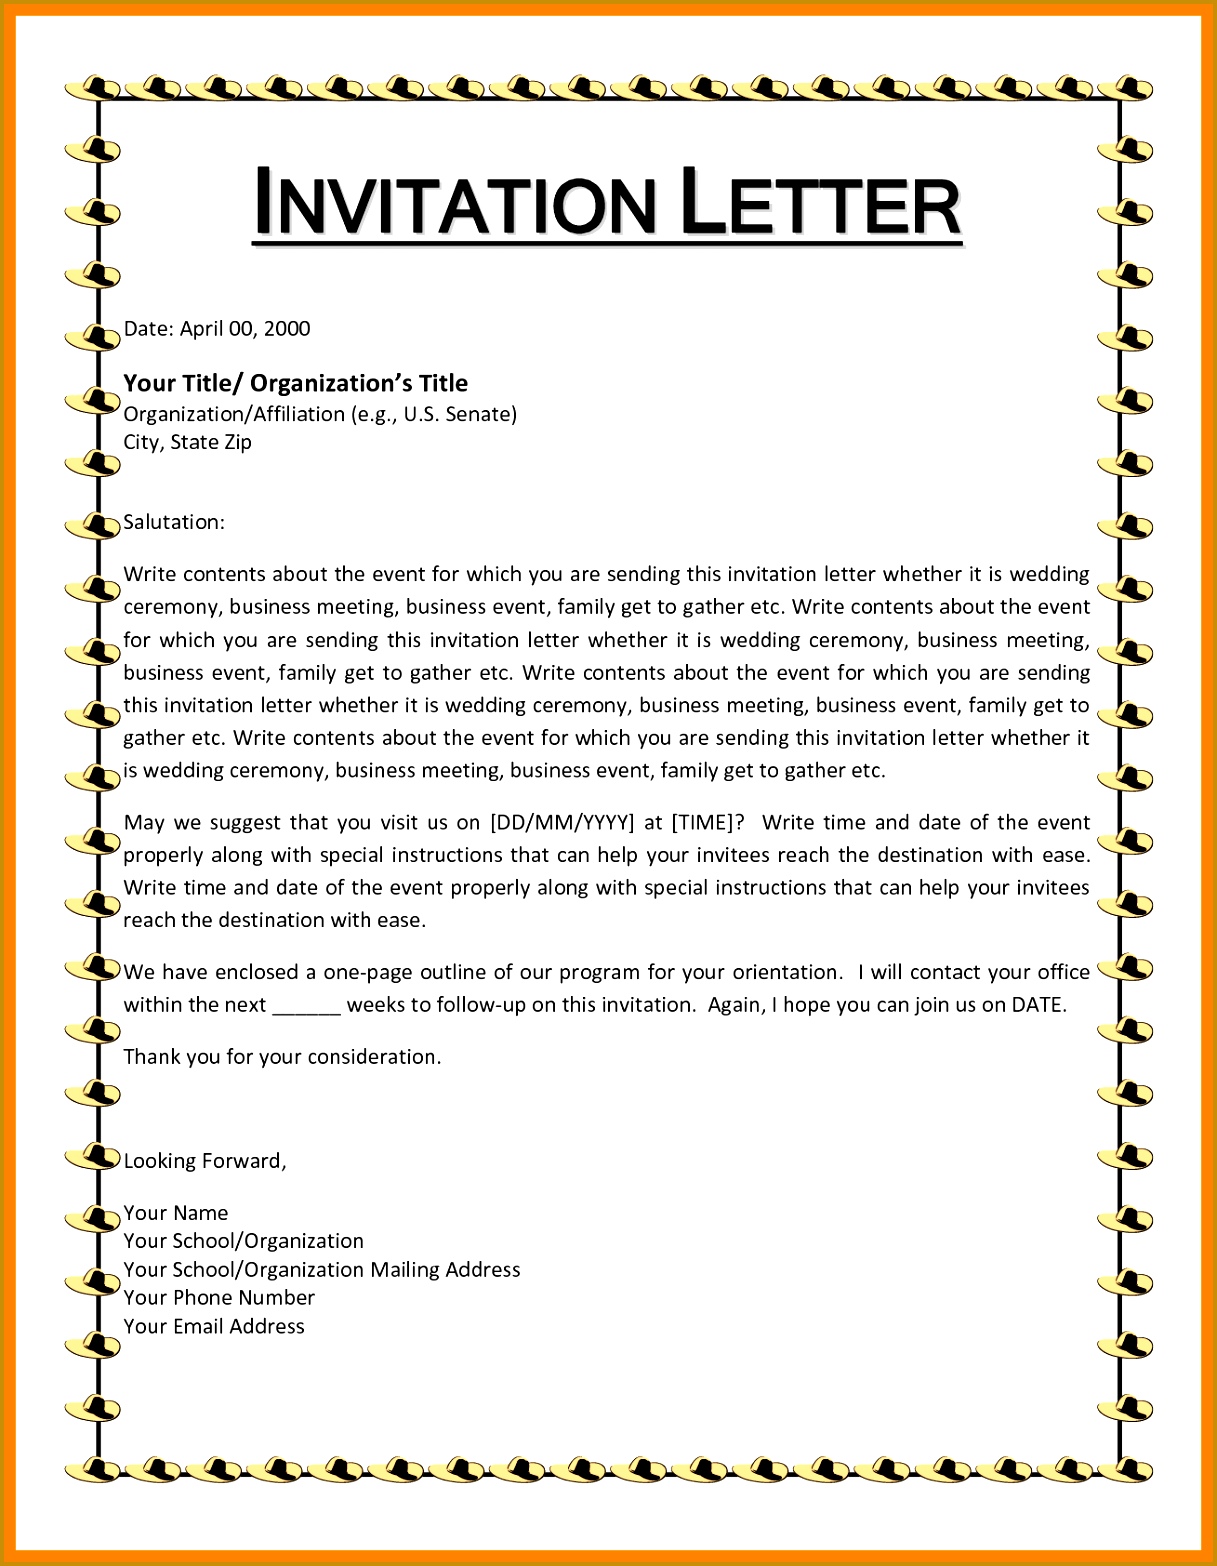 invite letter formatvitation letter for event 1641 caption 15661217